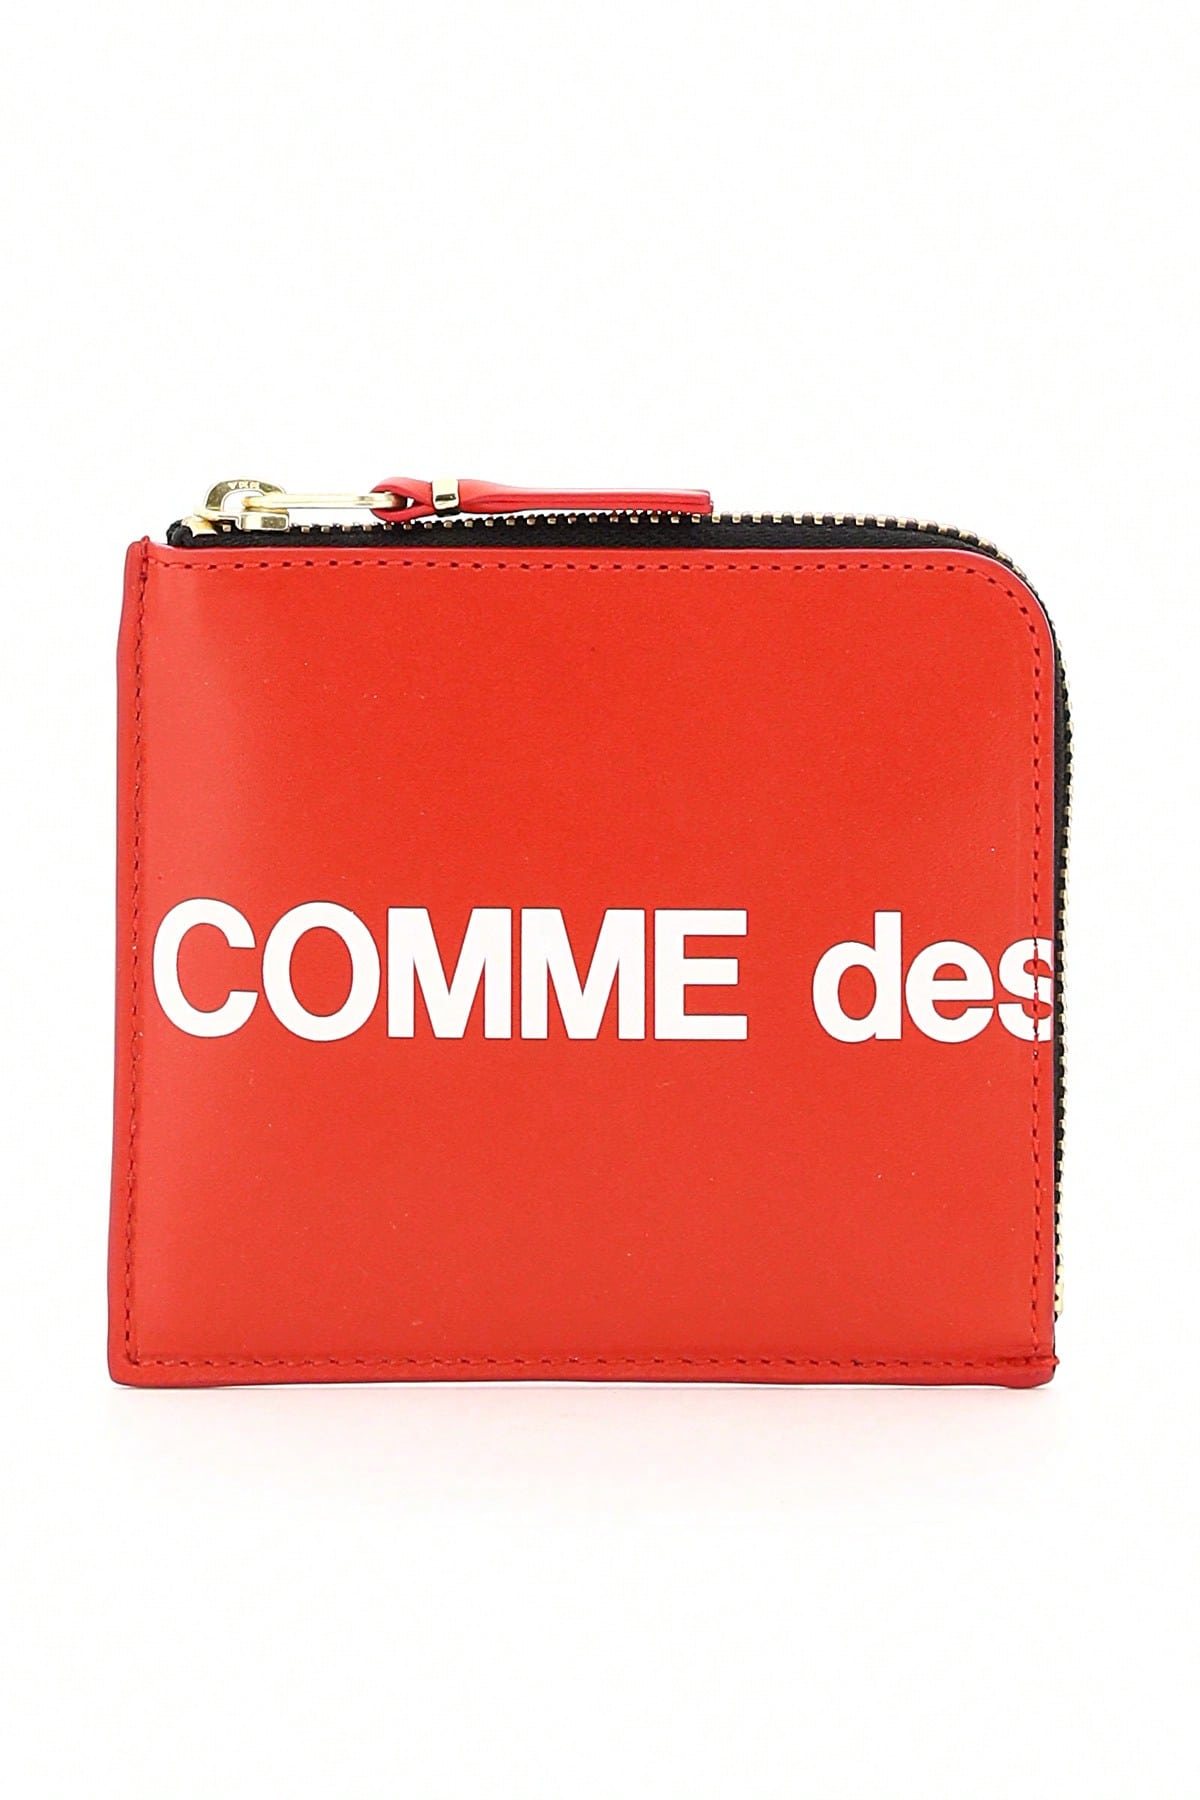 Кошелек Comme Des Garcons Кошелек с огромным логотипом, красный кошелек дорожный tatonka travel wallet 2978